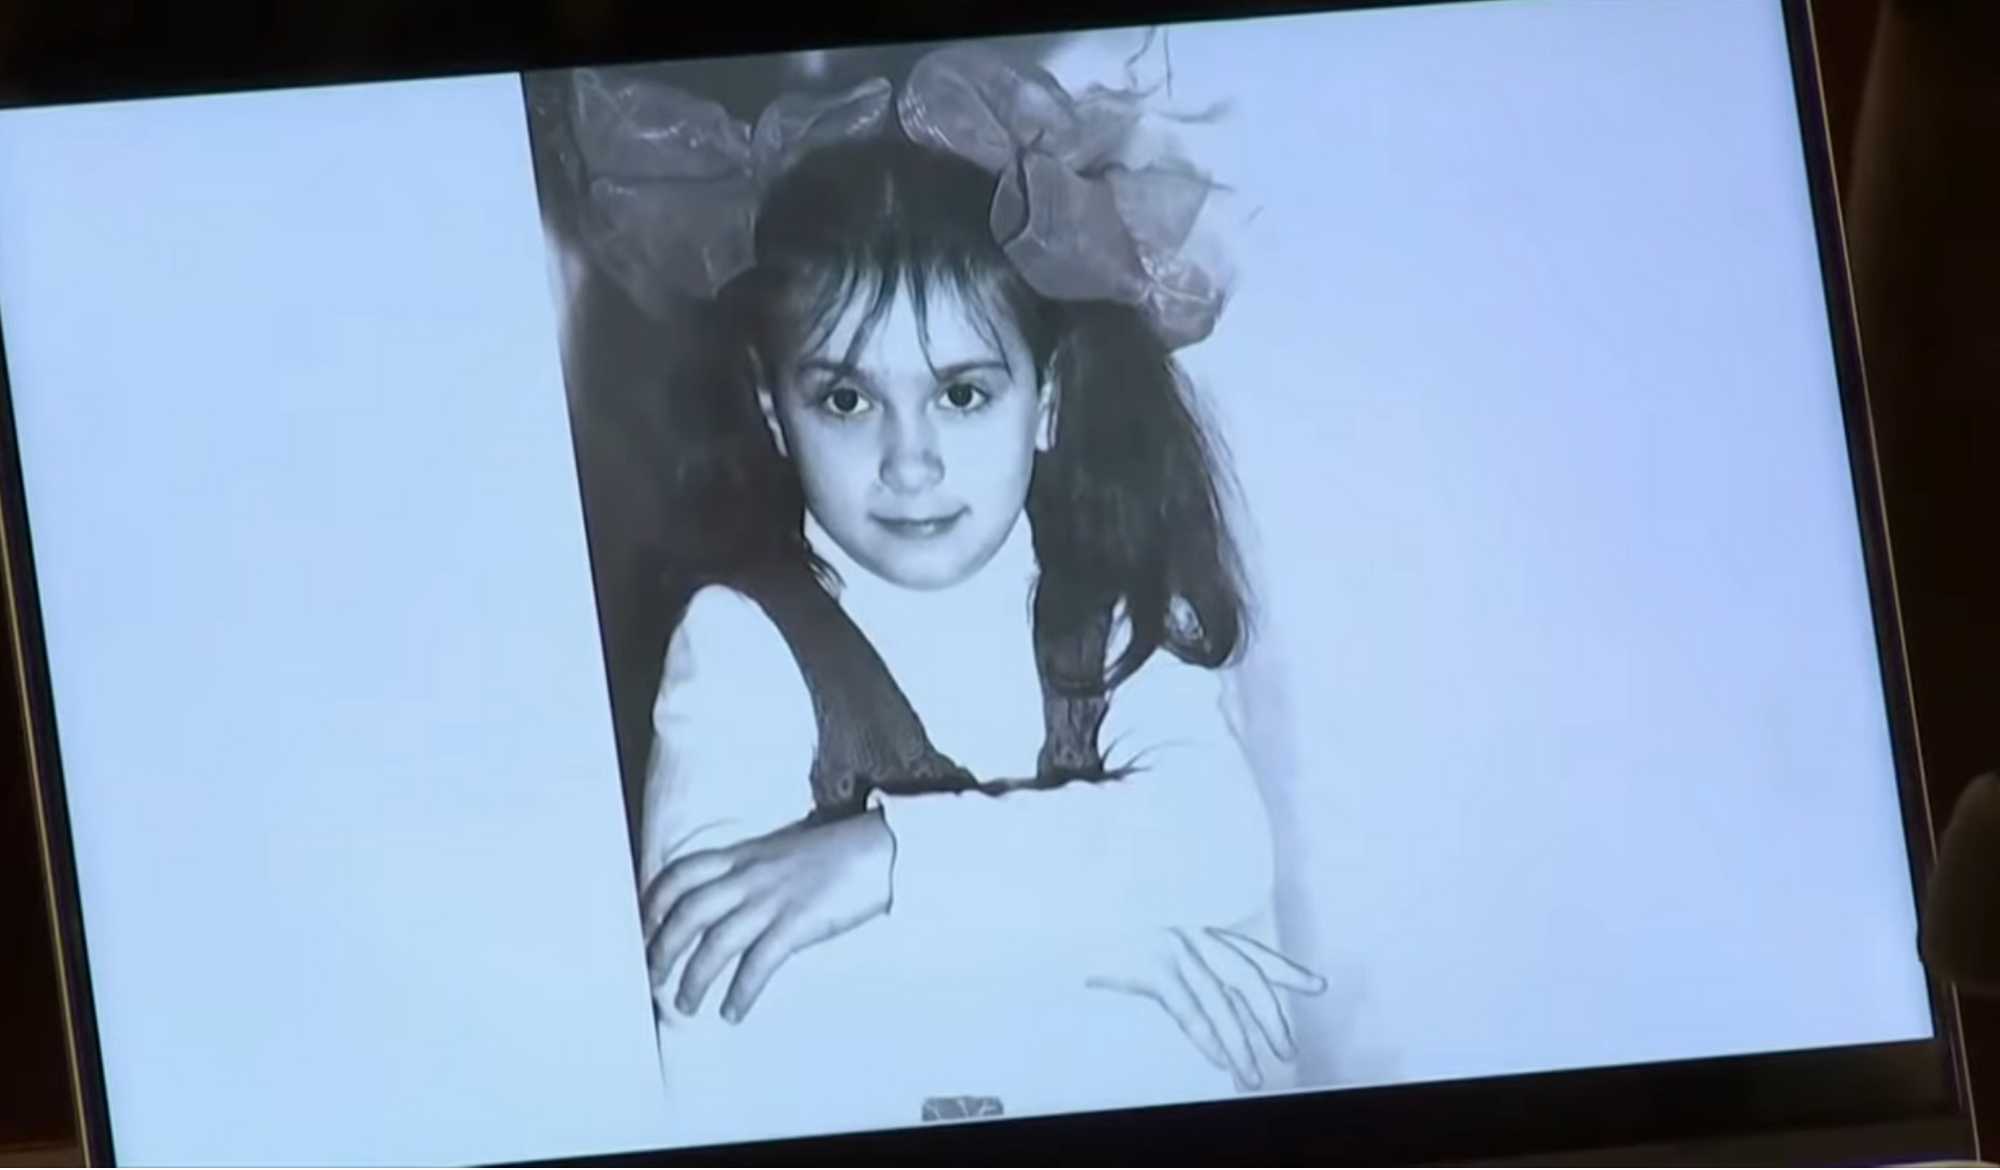 Мама украинки Галины Гатчинс, которую случайно убил Алек Болдуин, проплакала все интервью в день суда над оружейницей "Ржавчины". Видео